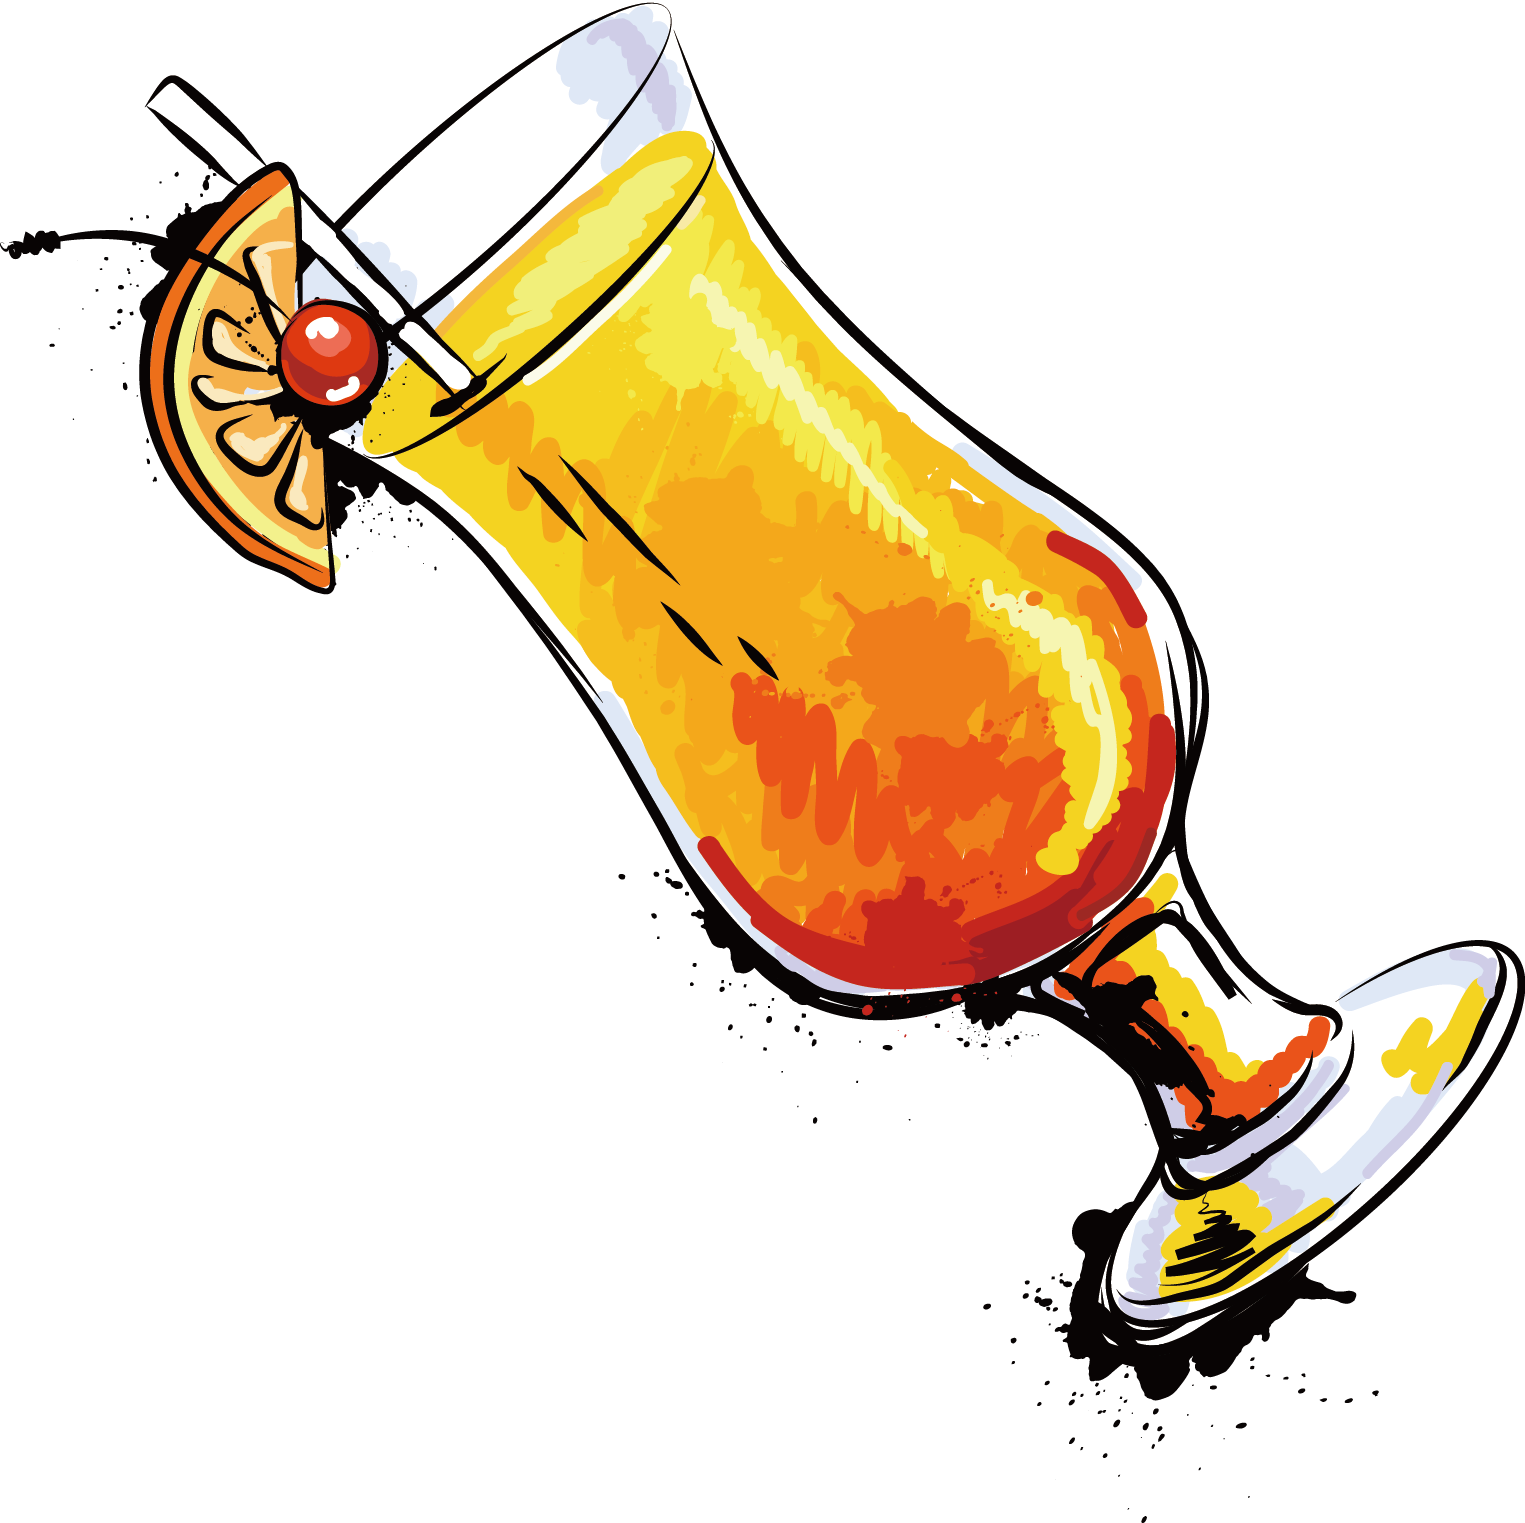 Juice Orange Soft Drink - Juice Orange Soft Drink (1525x1523)